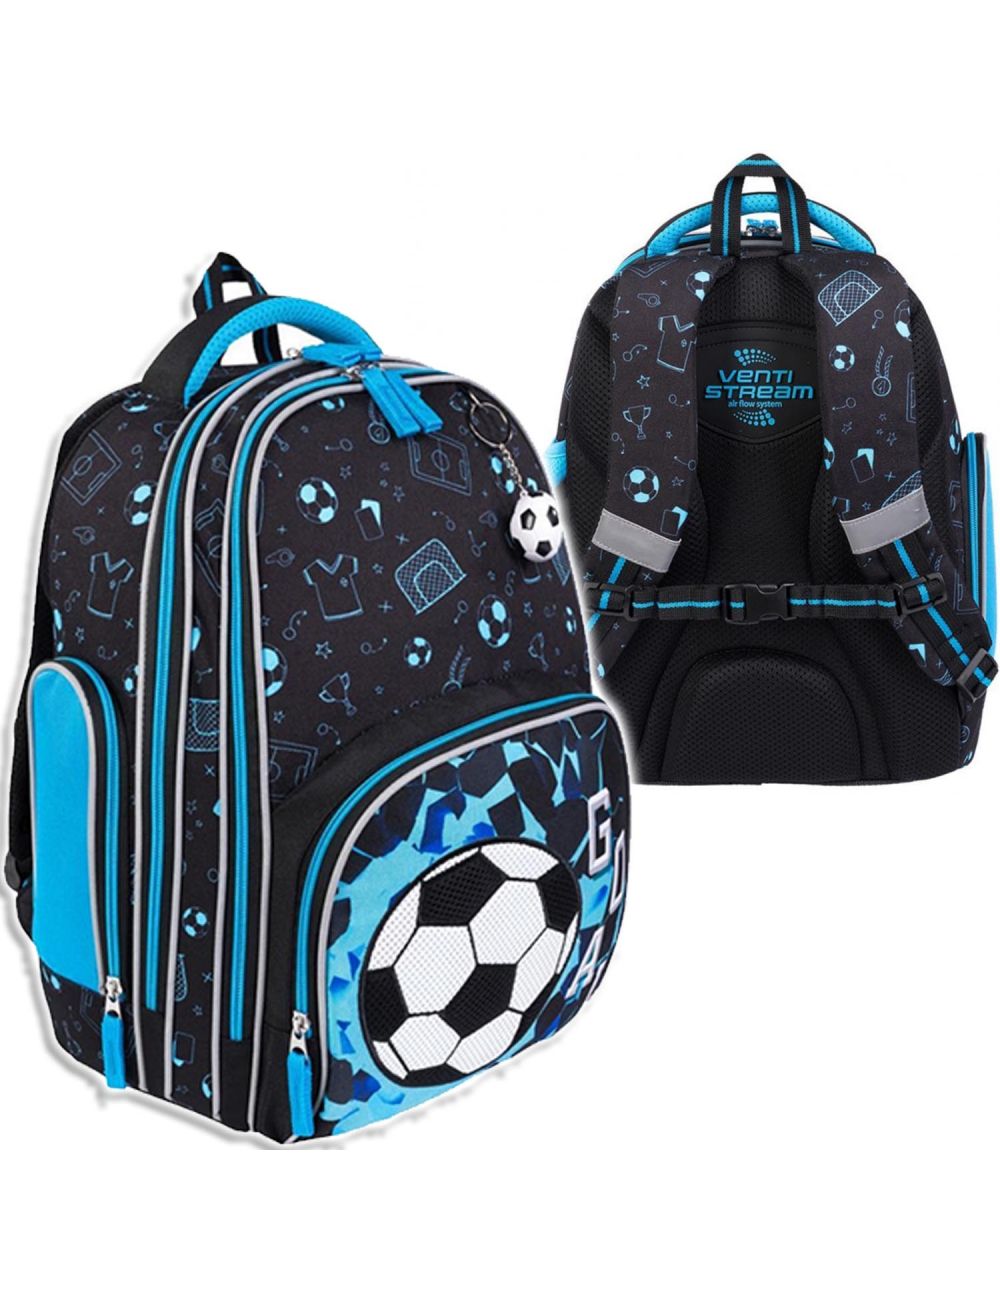 St.Majewski Plecak Szkolny Bambino Soccer Piłka Nożna Premium 3071